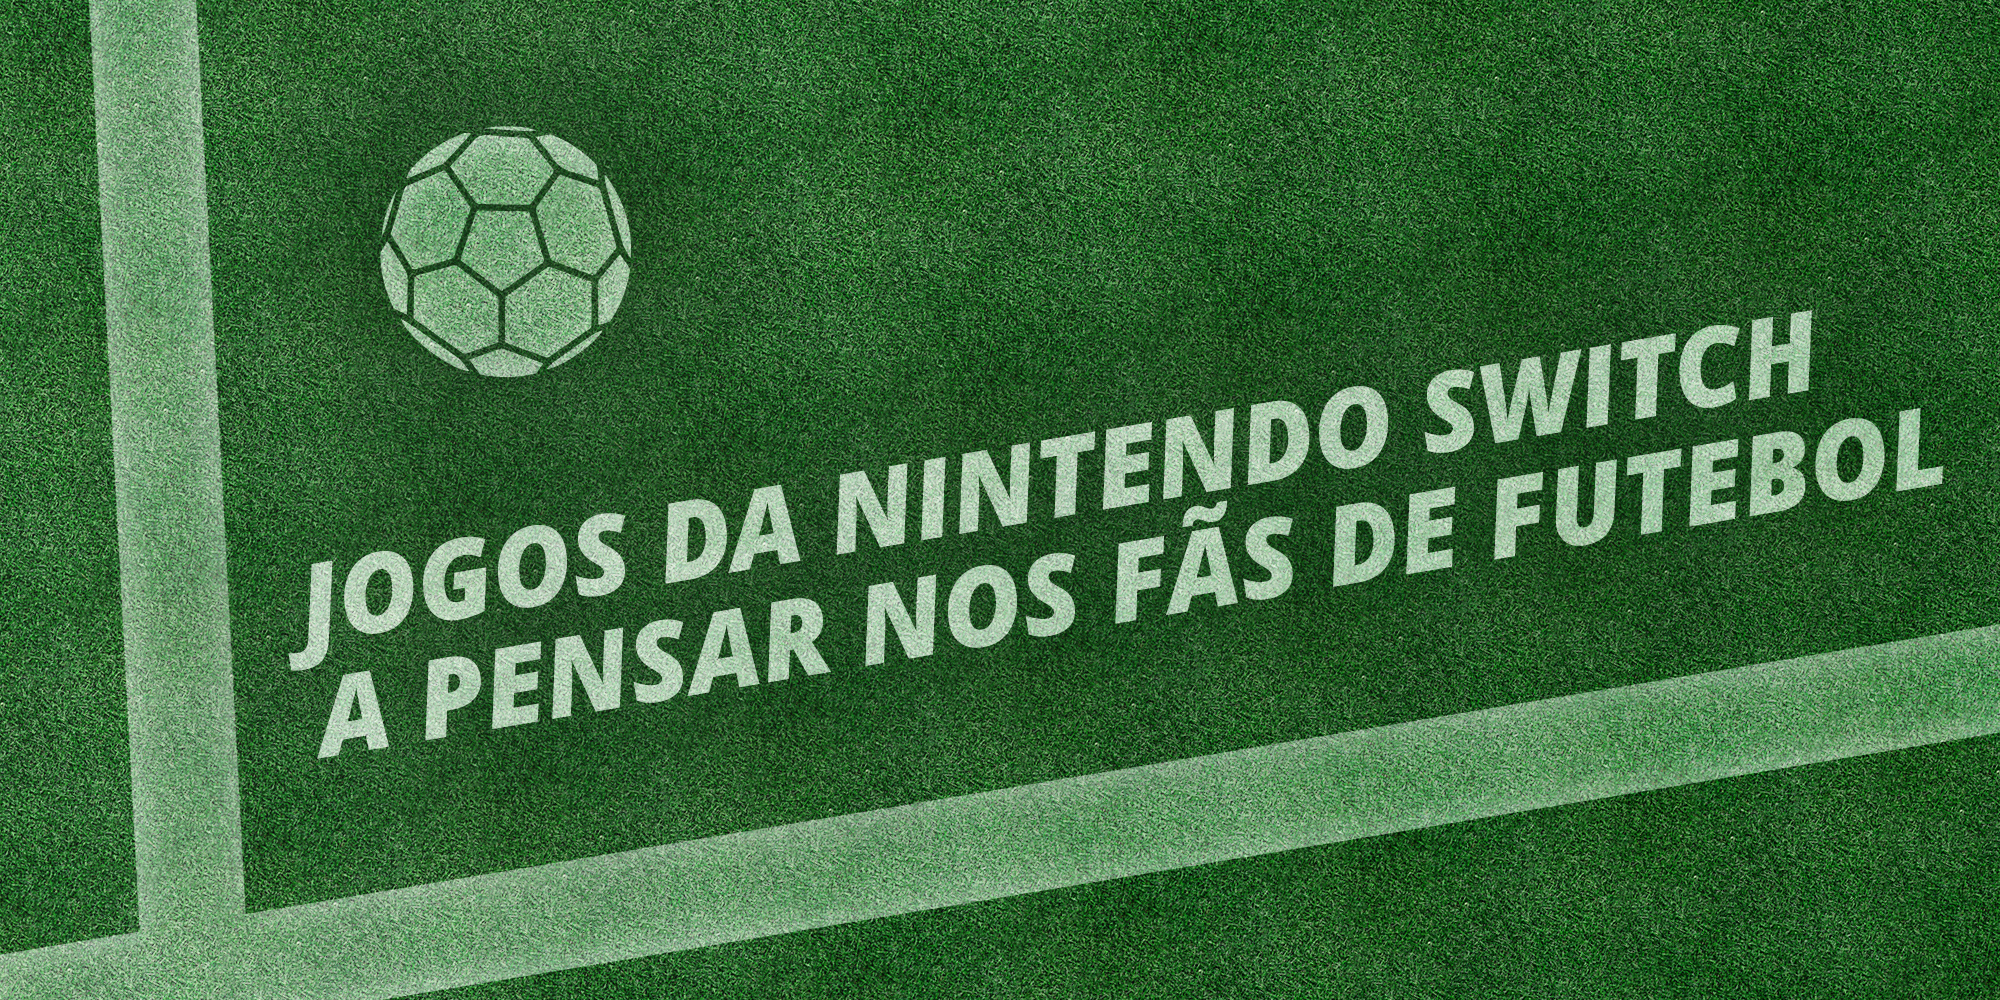 Jogos da Nintendo Switch a pensar nos fãs de futebol